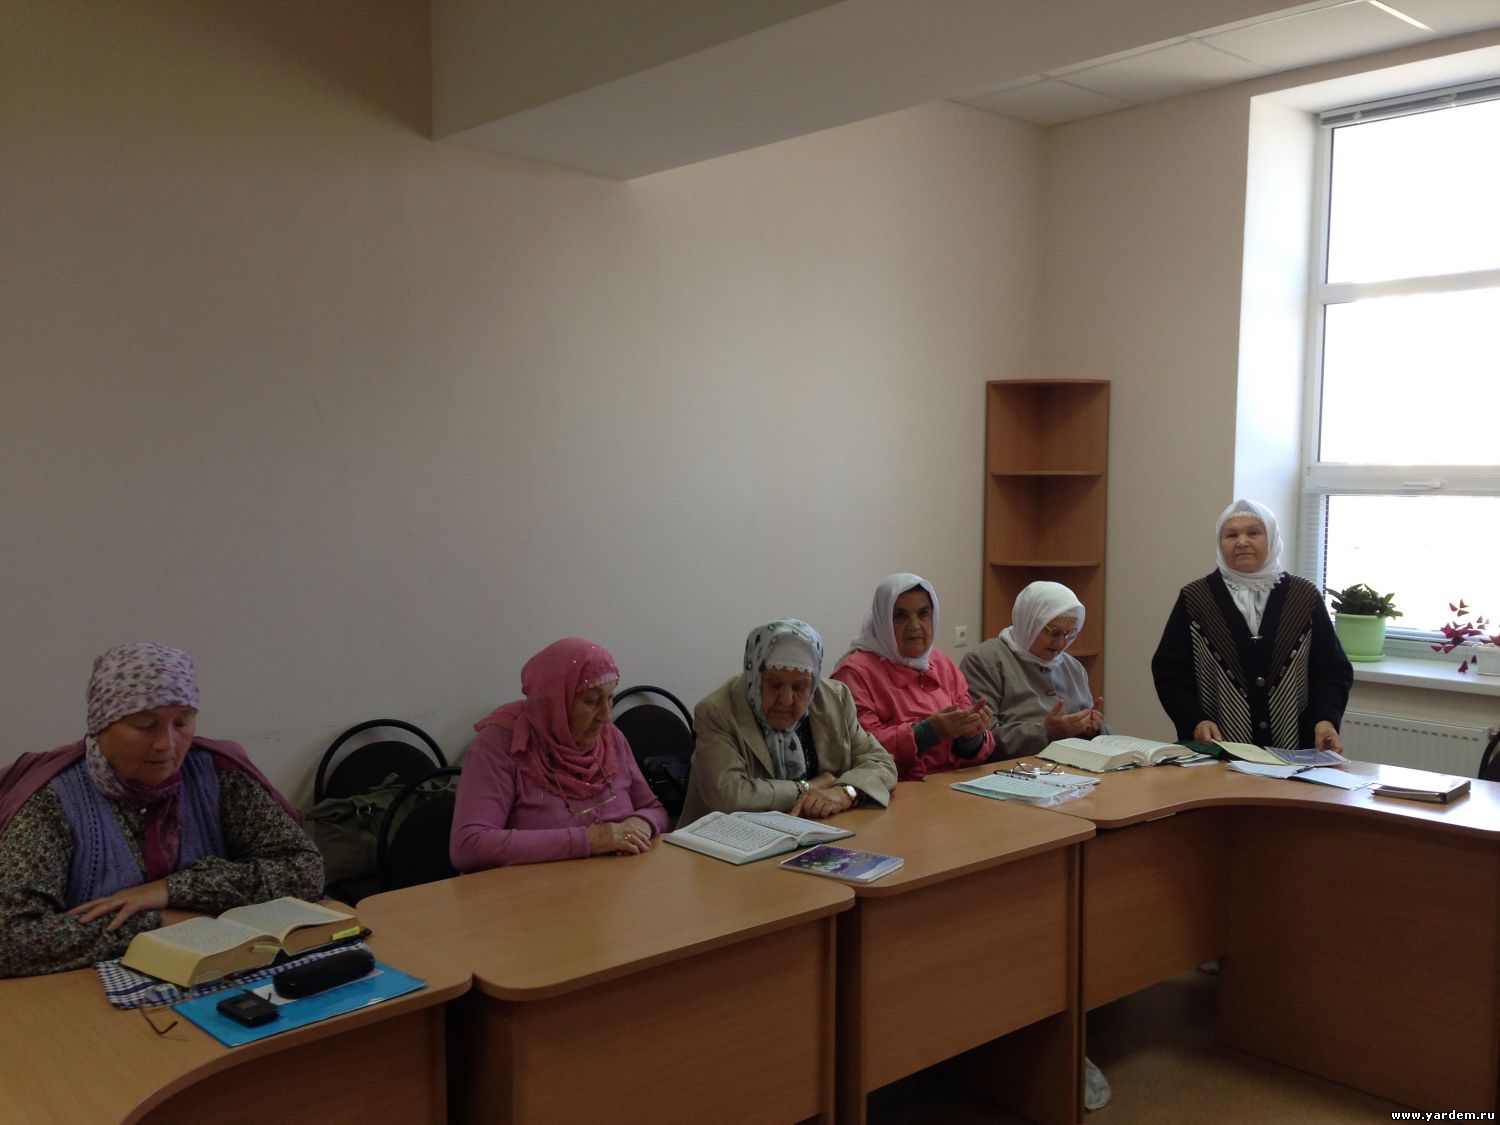 В мечети "Ярдэм" начались курсы для женщин по изучению Корана